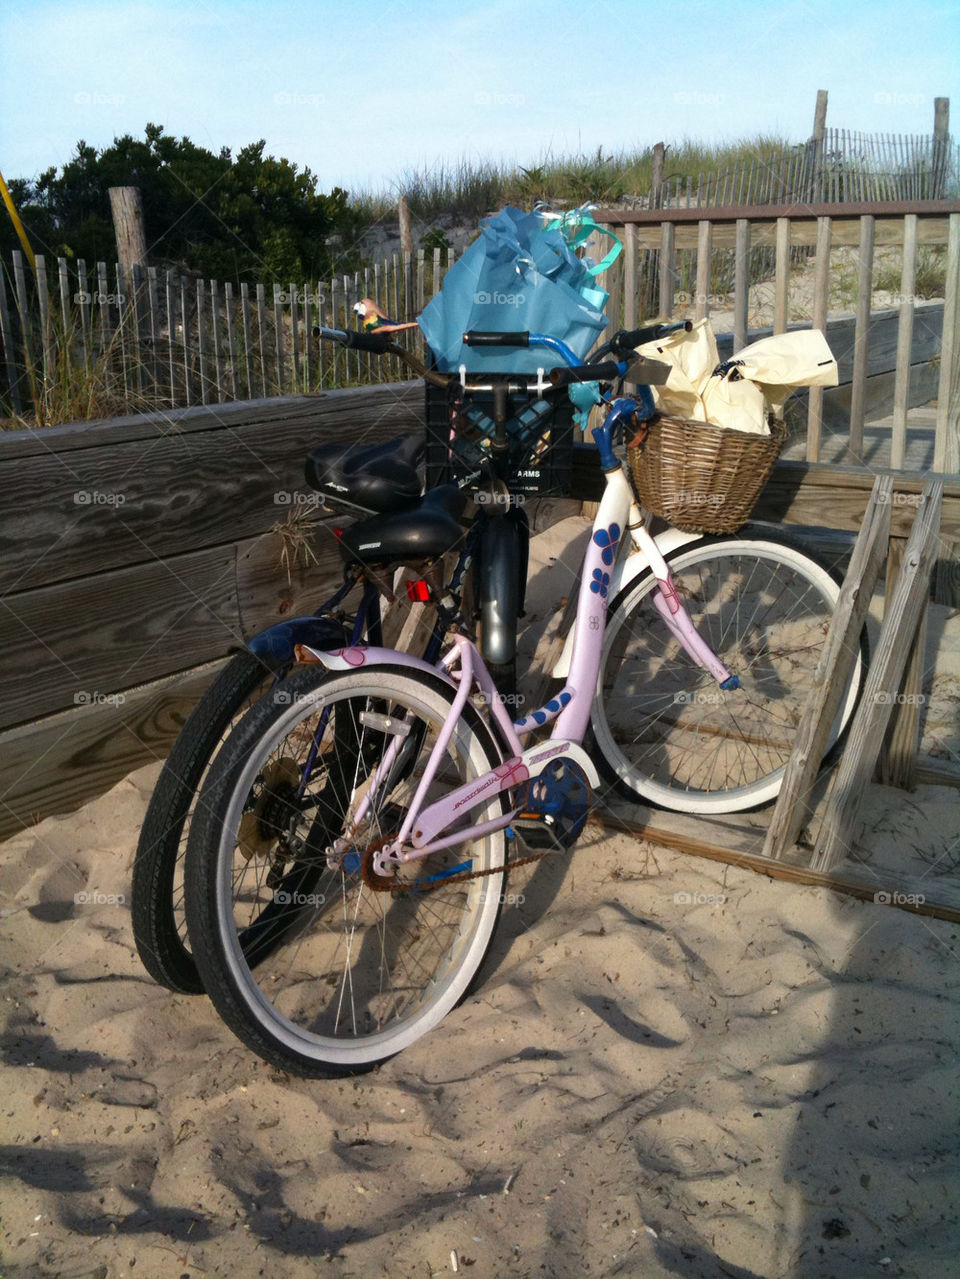 beach summer bike vacation by logailschmitt